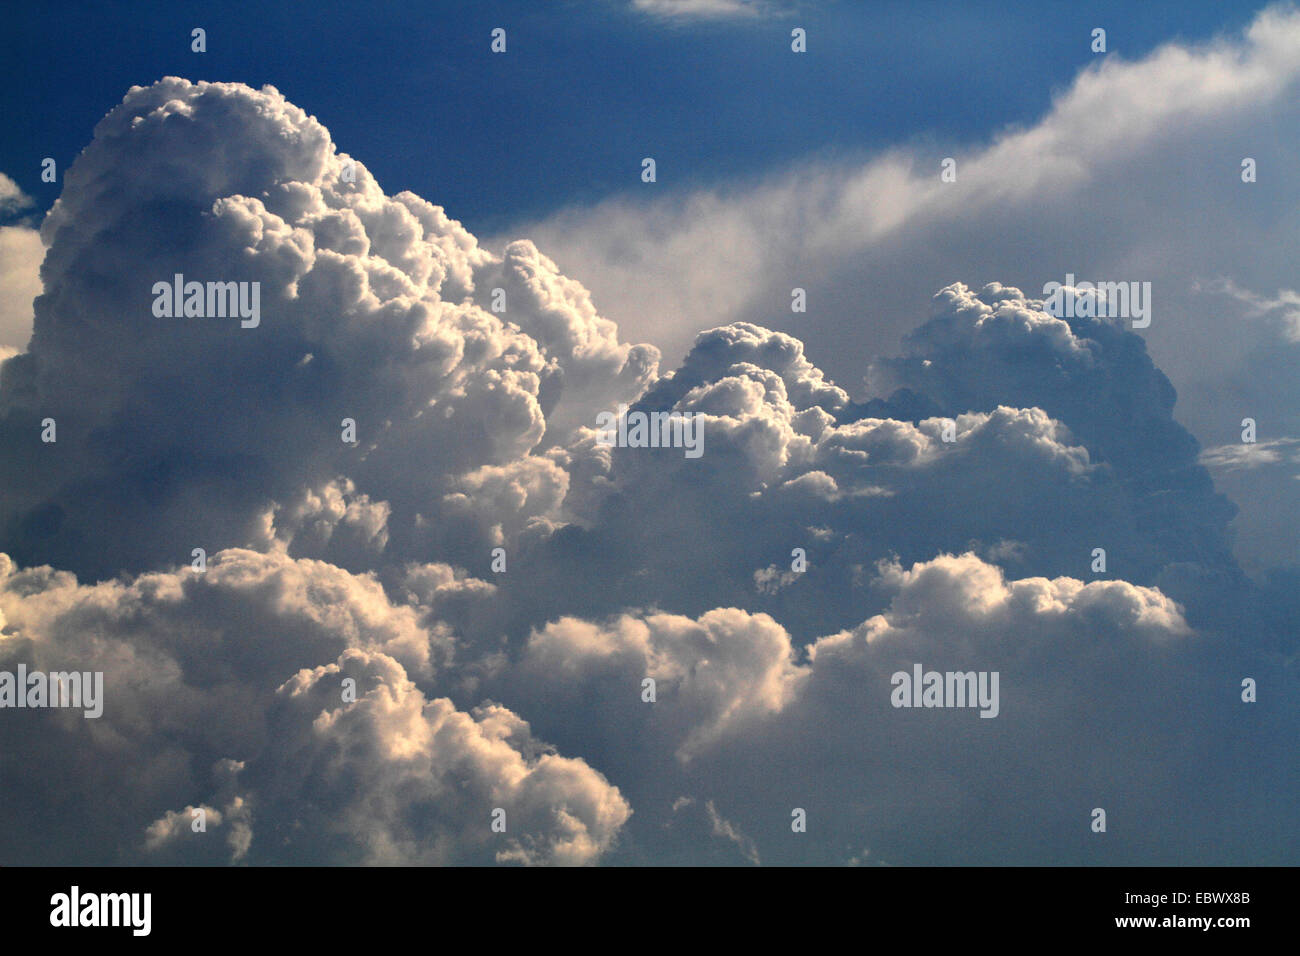 Las nubes cúmulos en la estratificación atmosférica inestable, Alemania Foto de stock